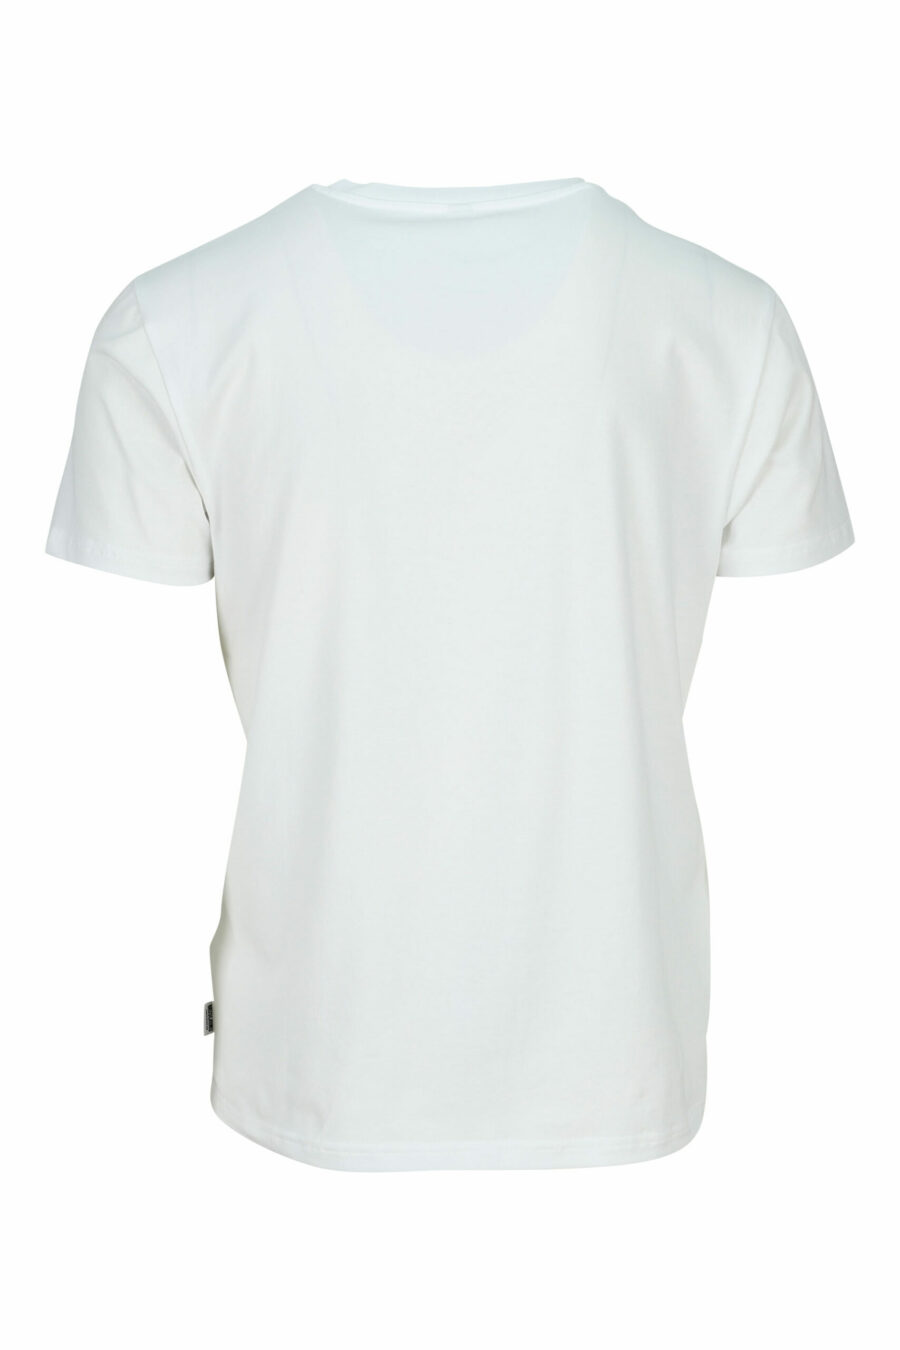 T-shirt blanc avec mini-logo ours "underbear" en caoutchouc noir - 667113602585 à l'échelle 1